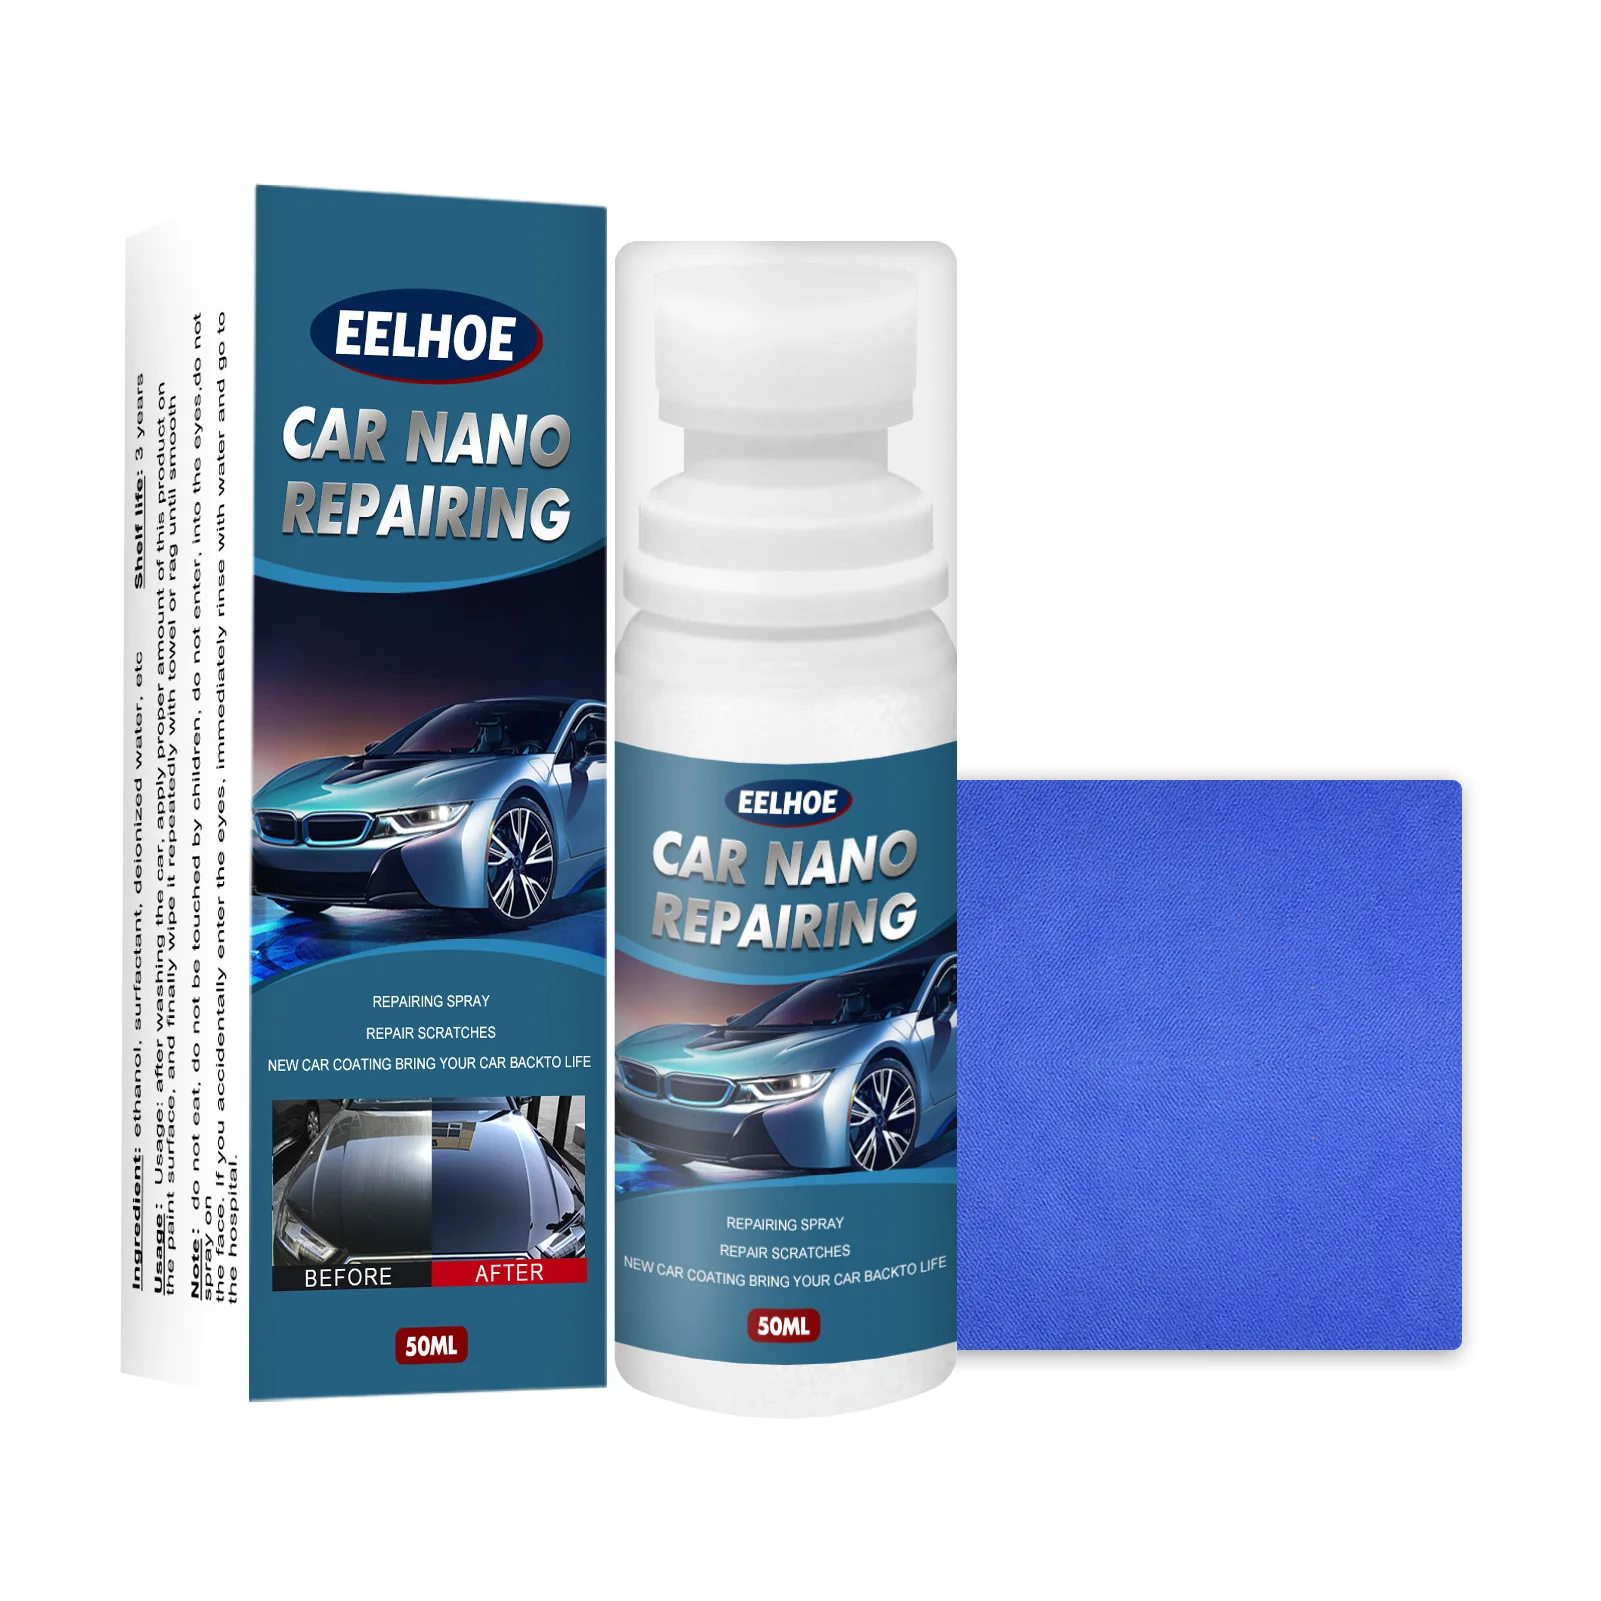 

Жидкое восковое покрытие для автомобиля, гидрофобная жидкость для удаления царапин и воска с помощью нанопокрытия